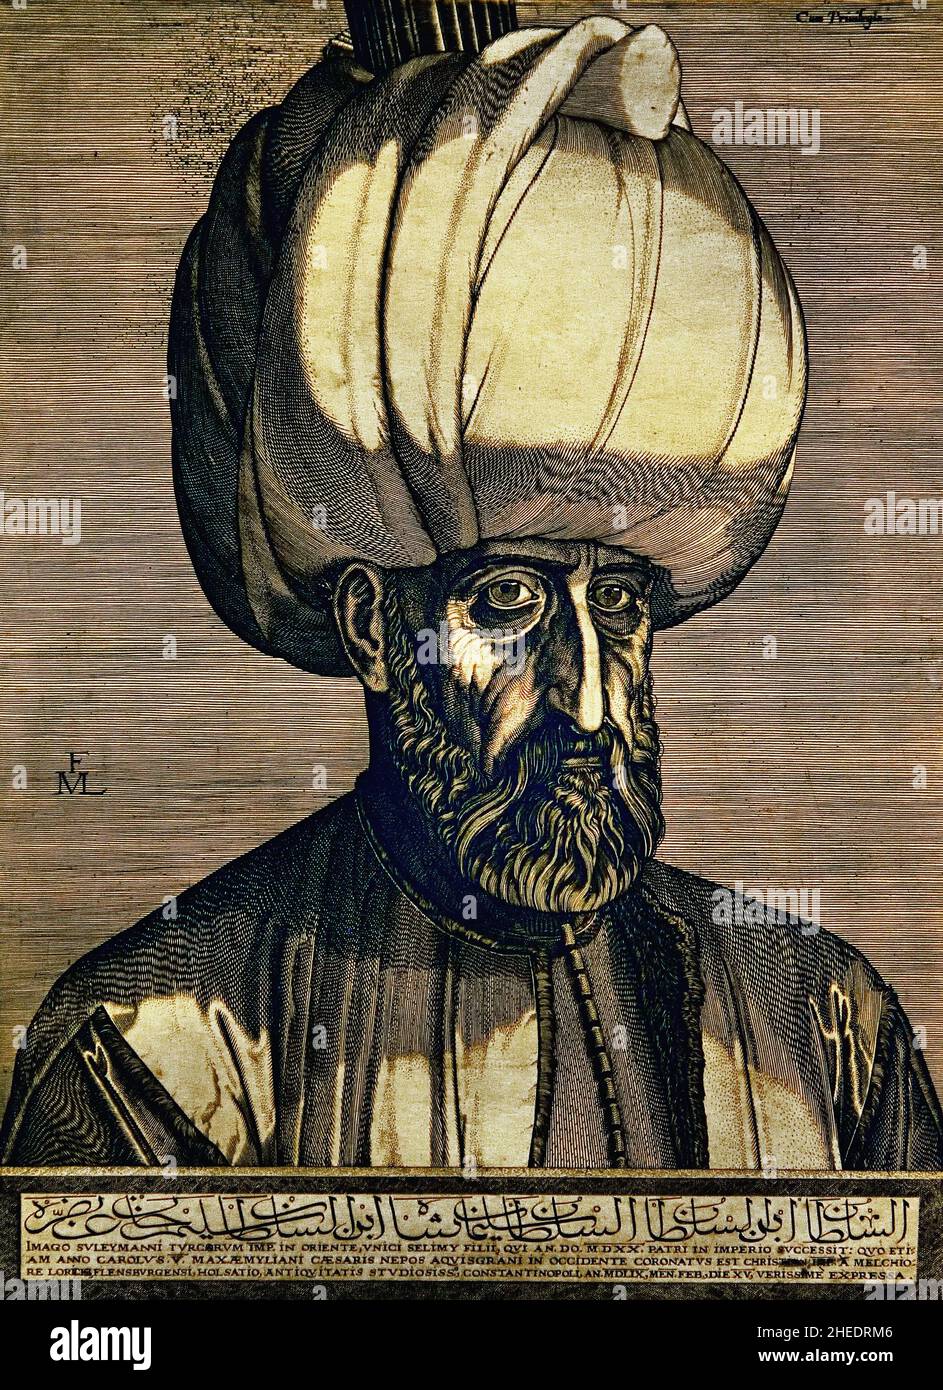 Ritratto del Sultano Suleyman il magnifico di Melchior Lrock. Melchior Lorichs 1526-1598 (Suleiman i, comunemente conosciuto come Suleiman il magnifico in Occidente e Suleiman il Lawgiver nel suo regno, fu il decimo e più lungo Sultano dell'Impero Ottomano dal 1520 fino alla sua morte nel 1566). Foto Stock